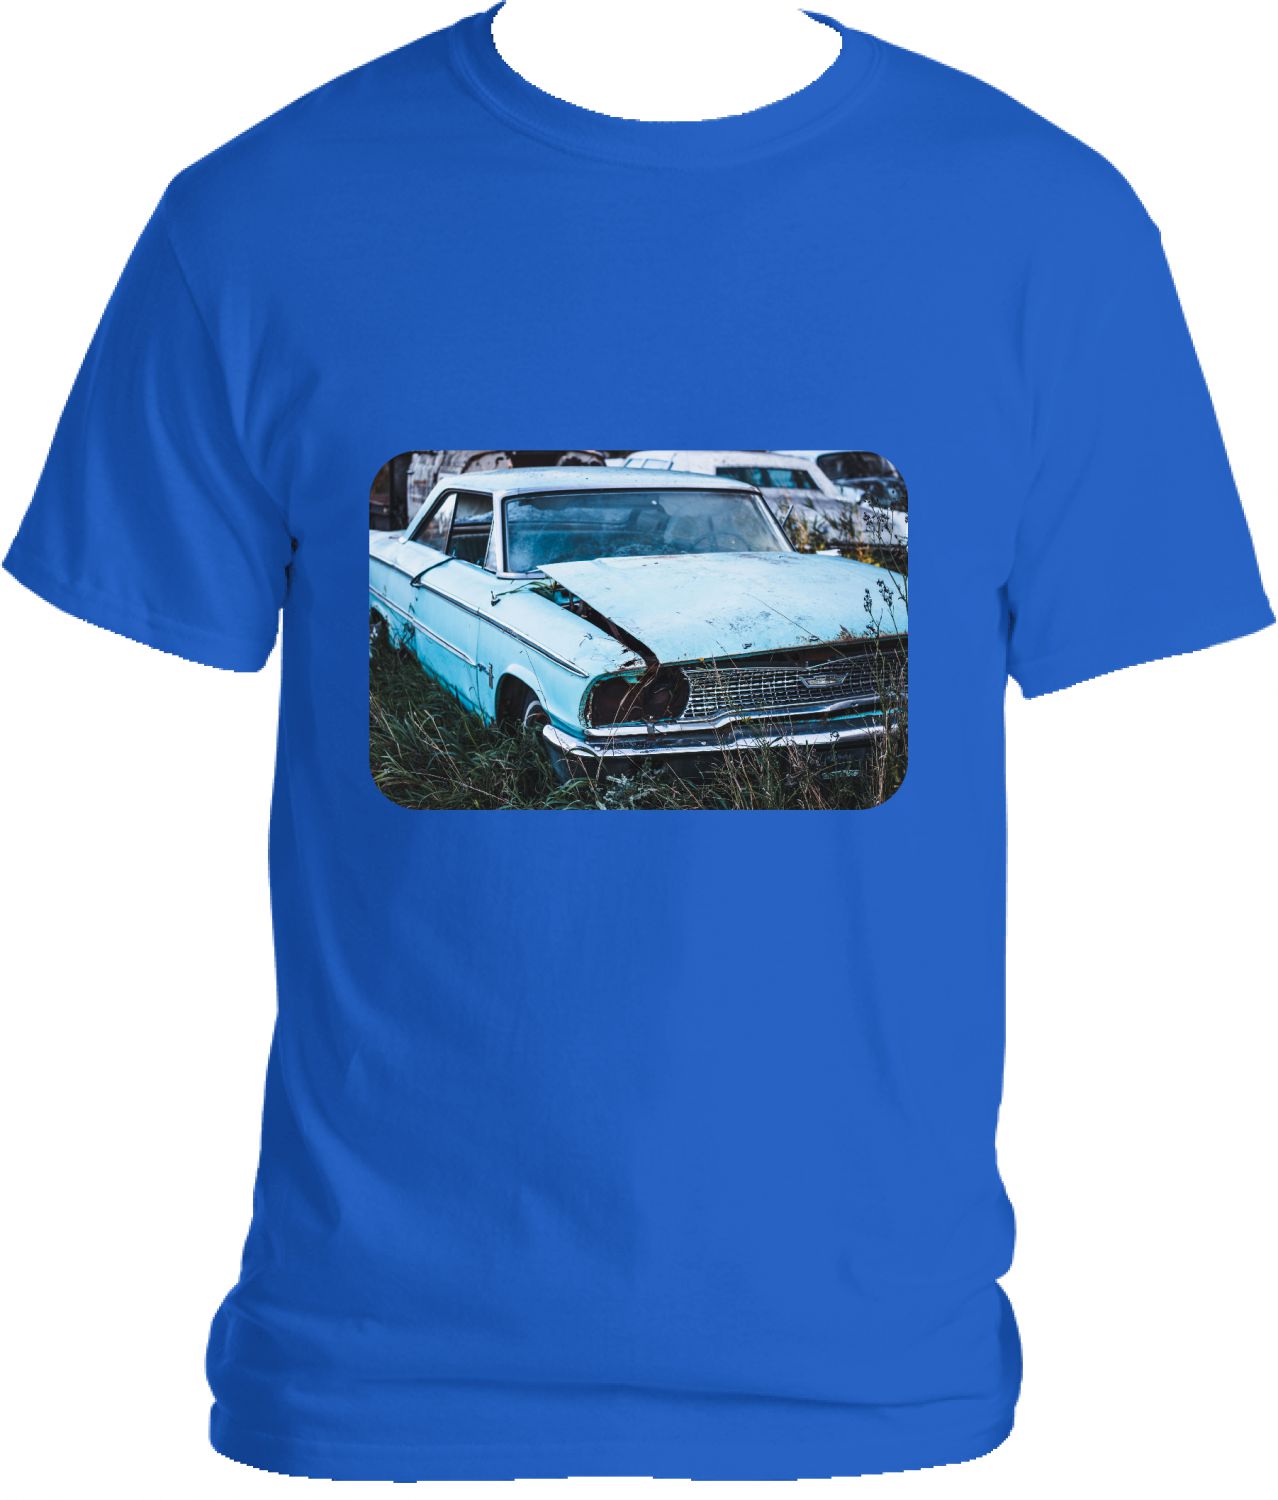 Blue Broken car T-shirt